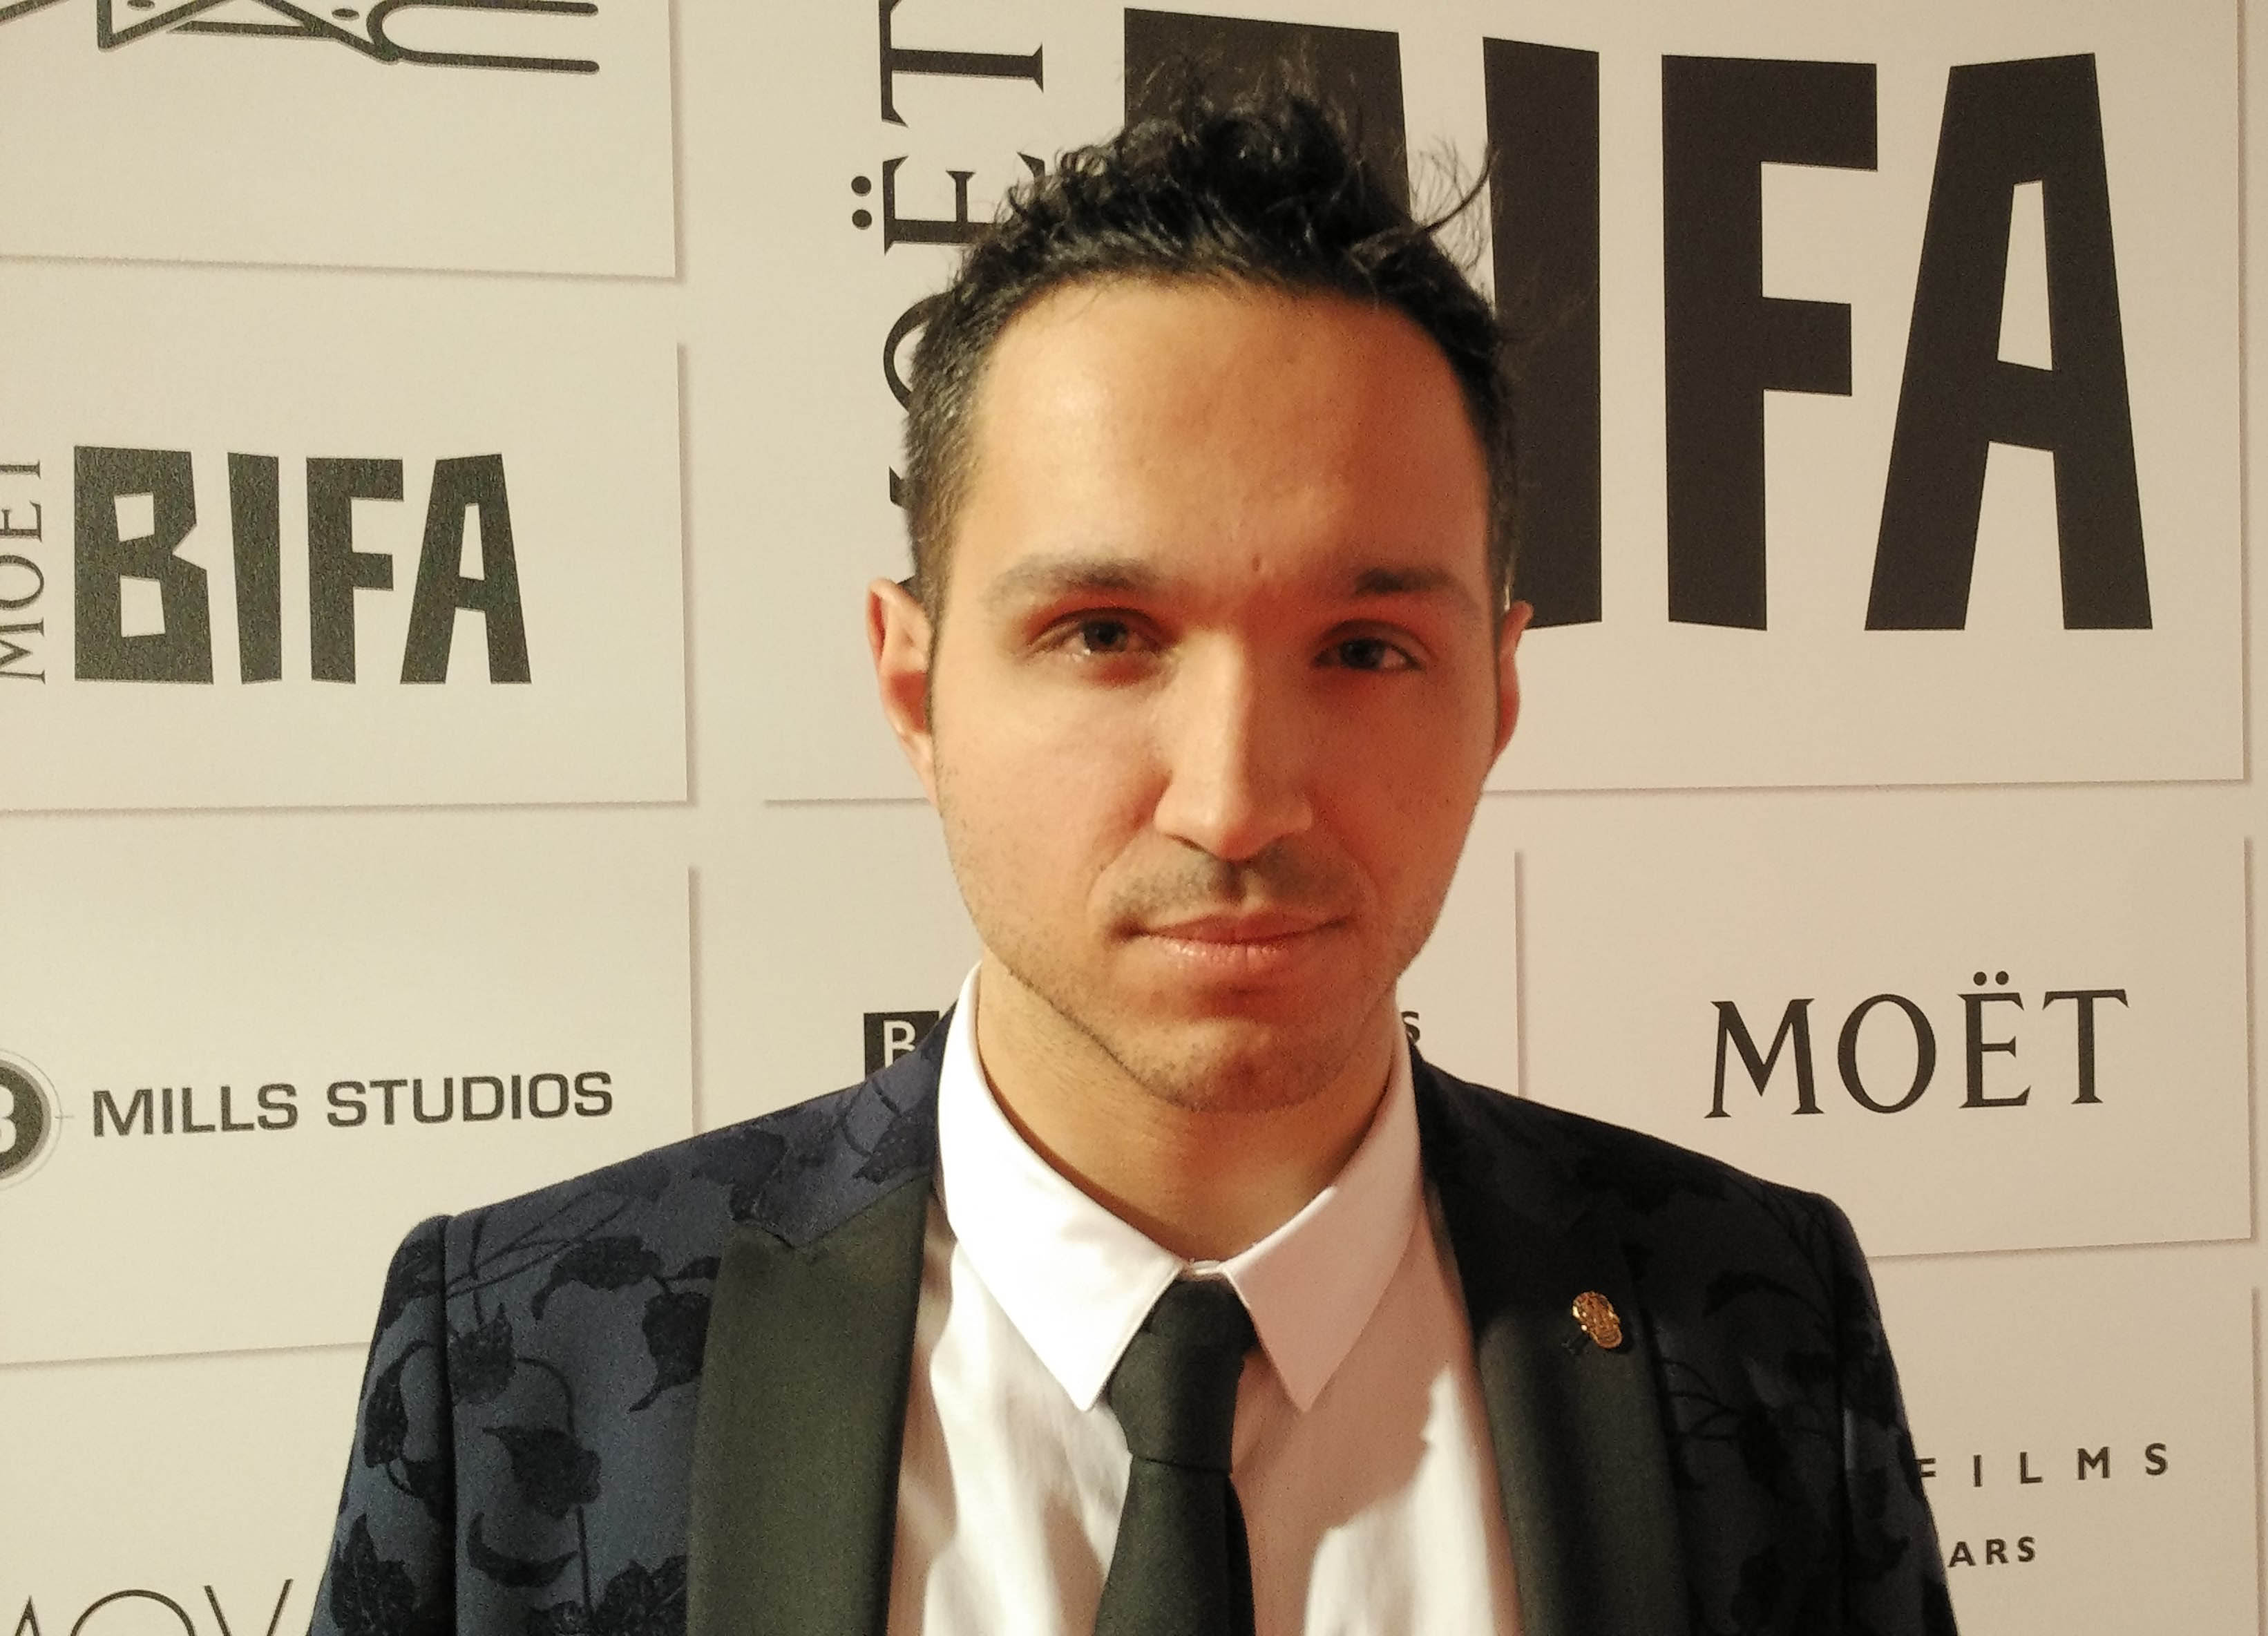 Adam Patel at the British Independent Film Awards 2015.